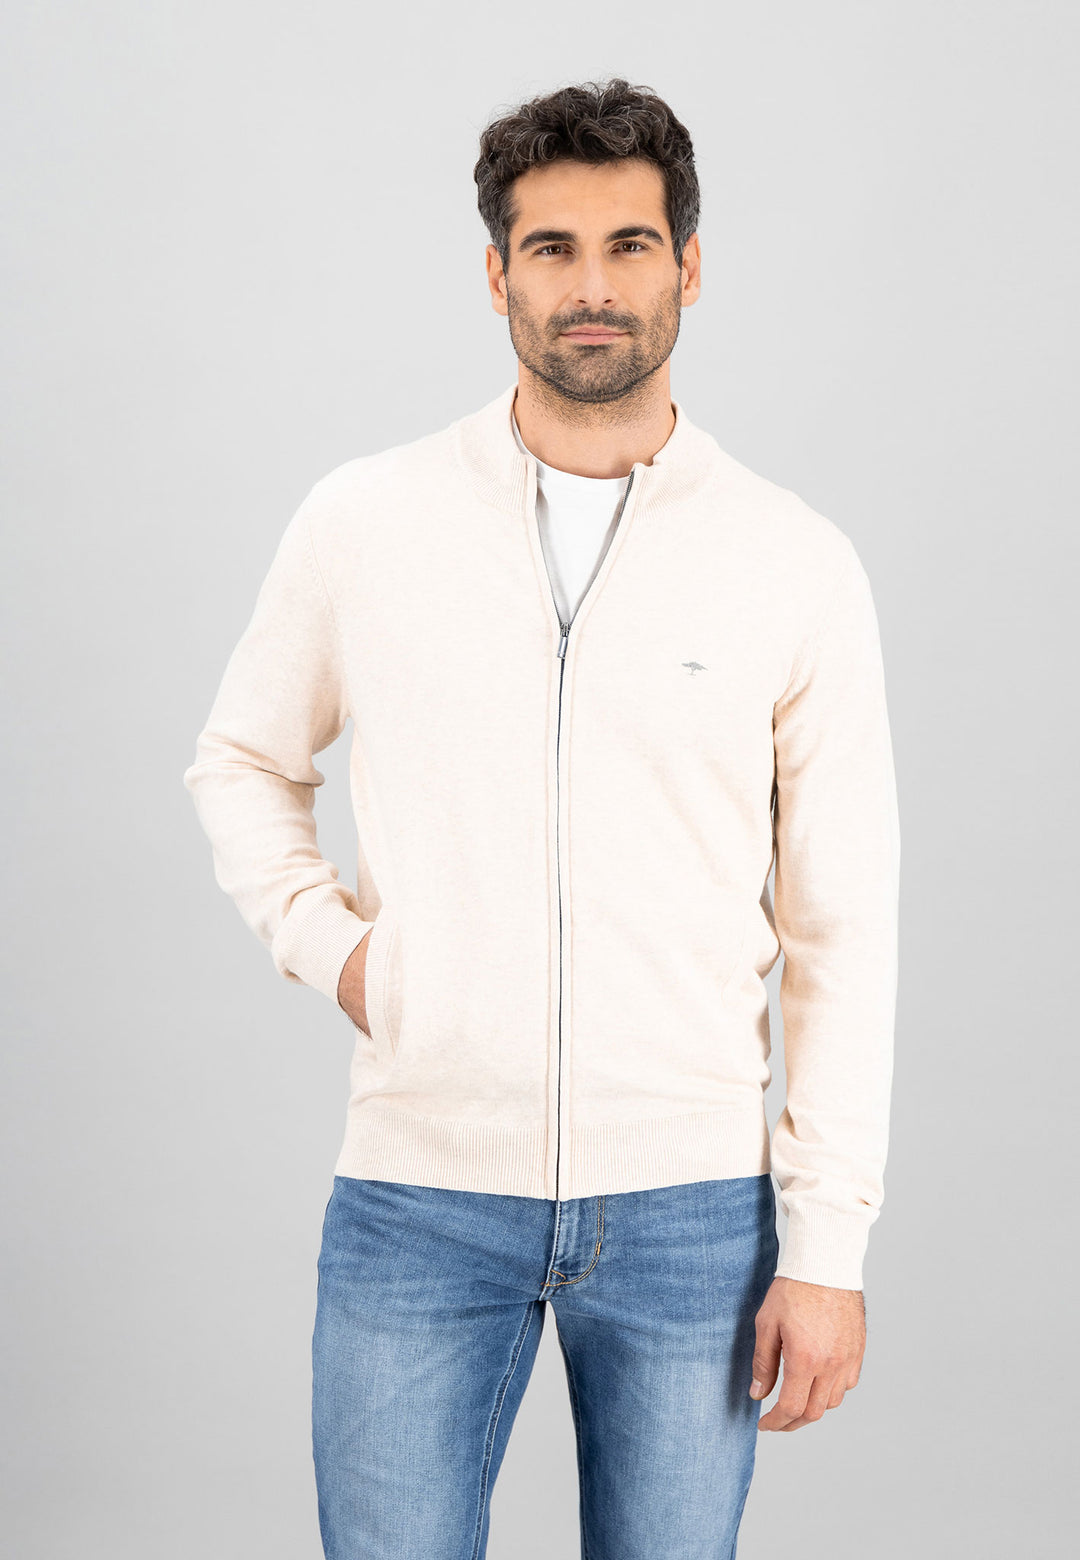 Men's sweater & knitted jackets – FYNCH-HATTON | Offizieller Online Shop